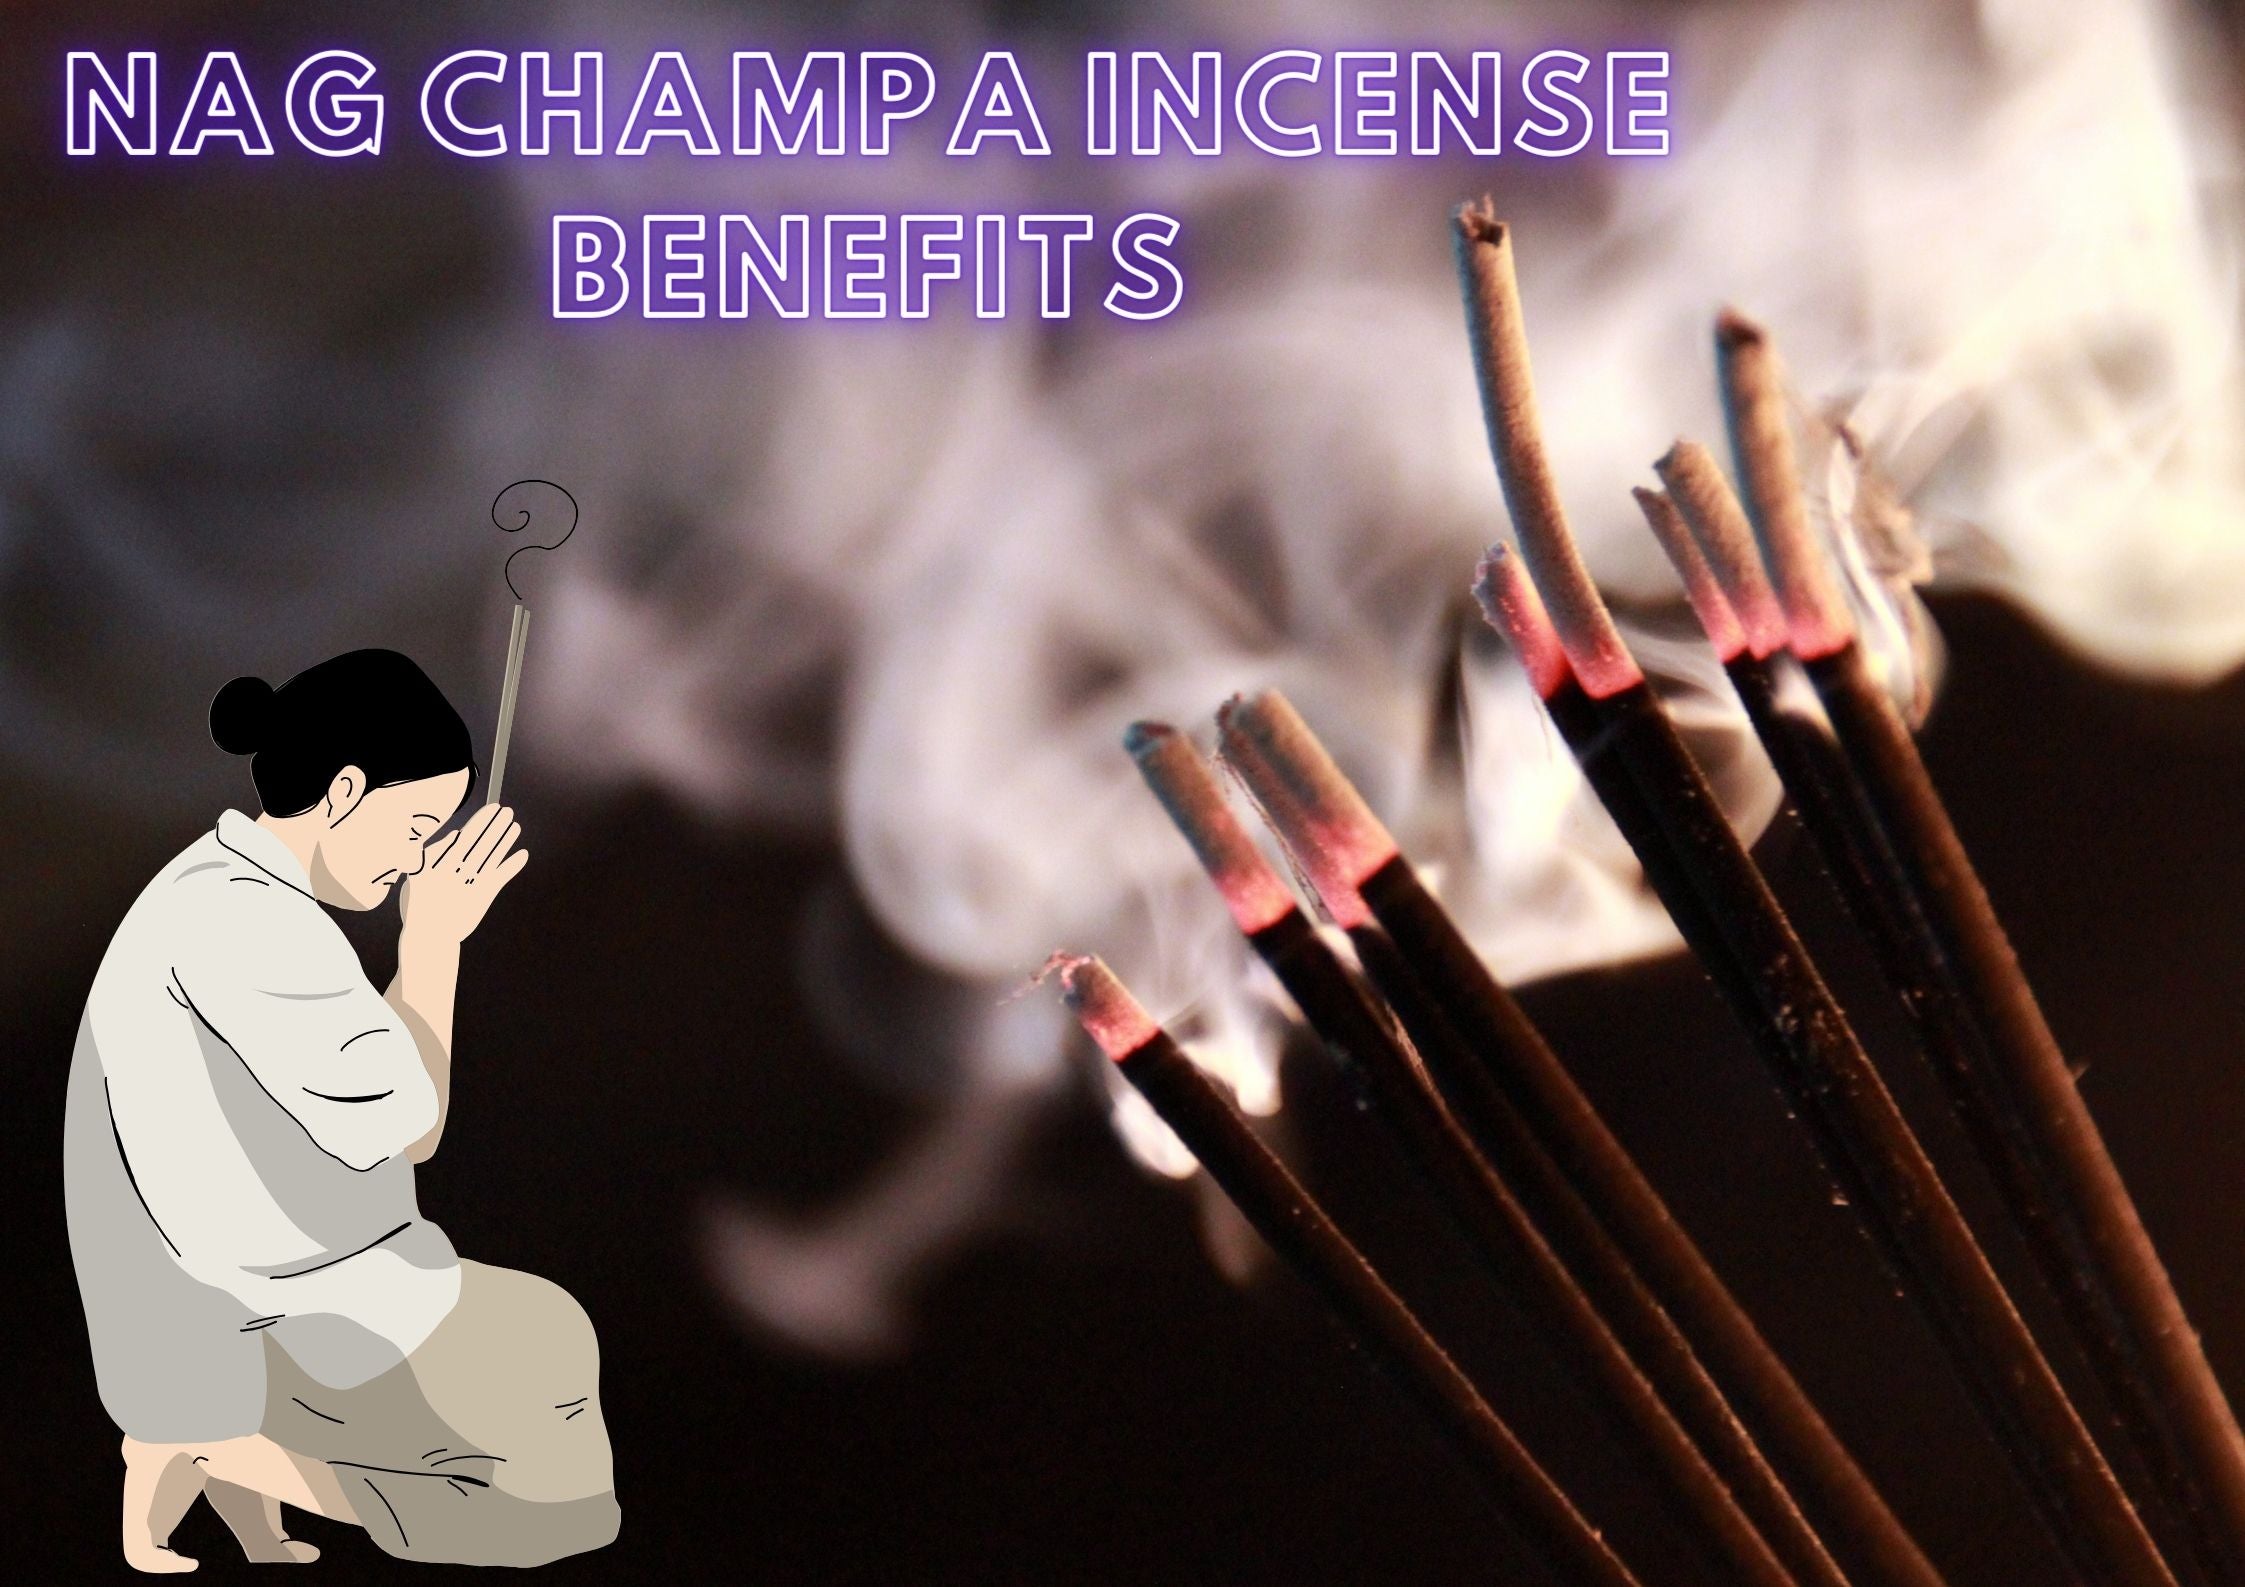 Nag champa incense benefits